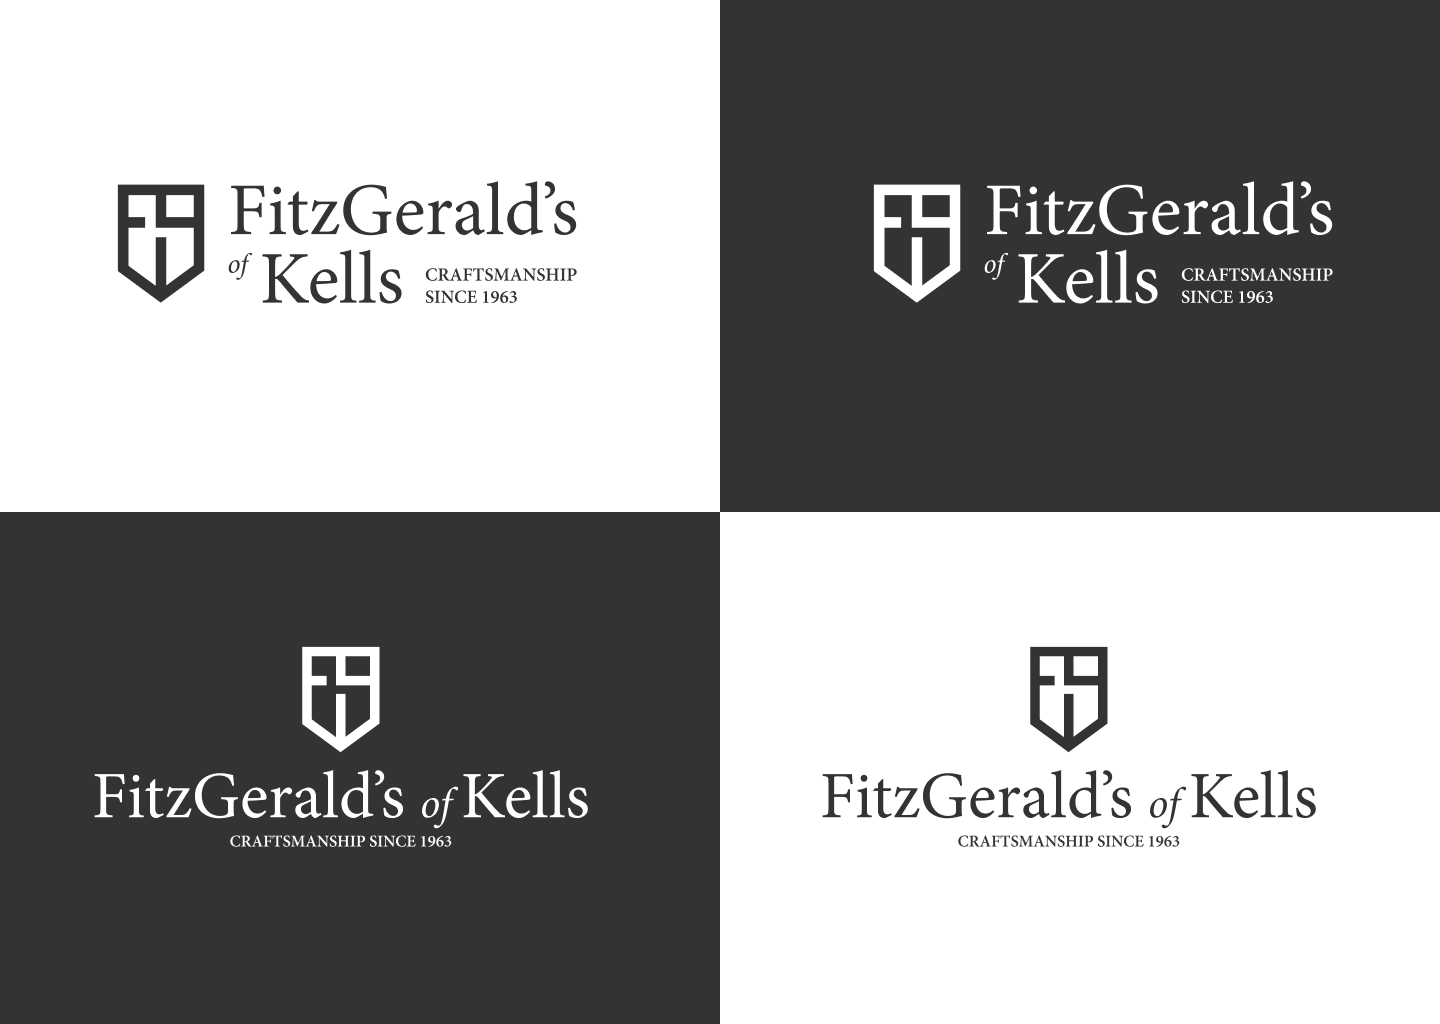 FitzGerald's of Kells